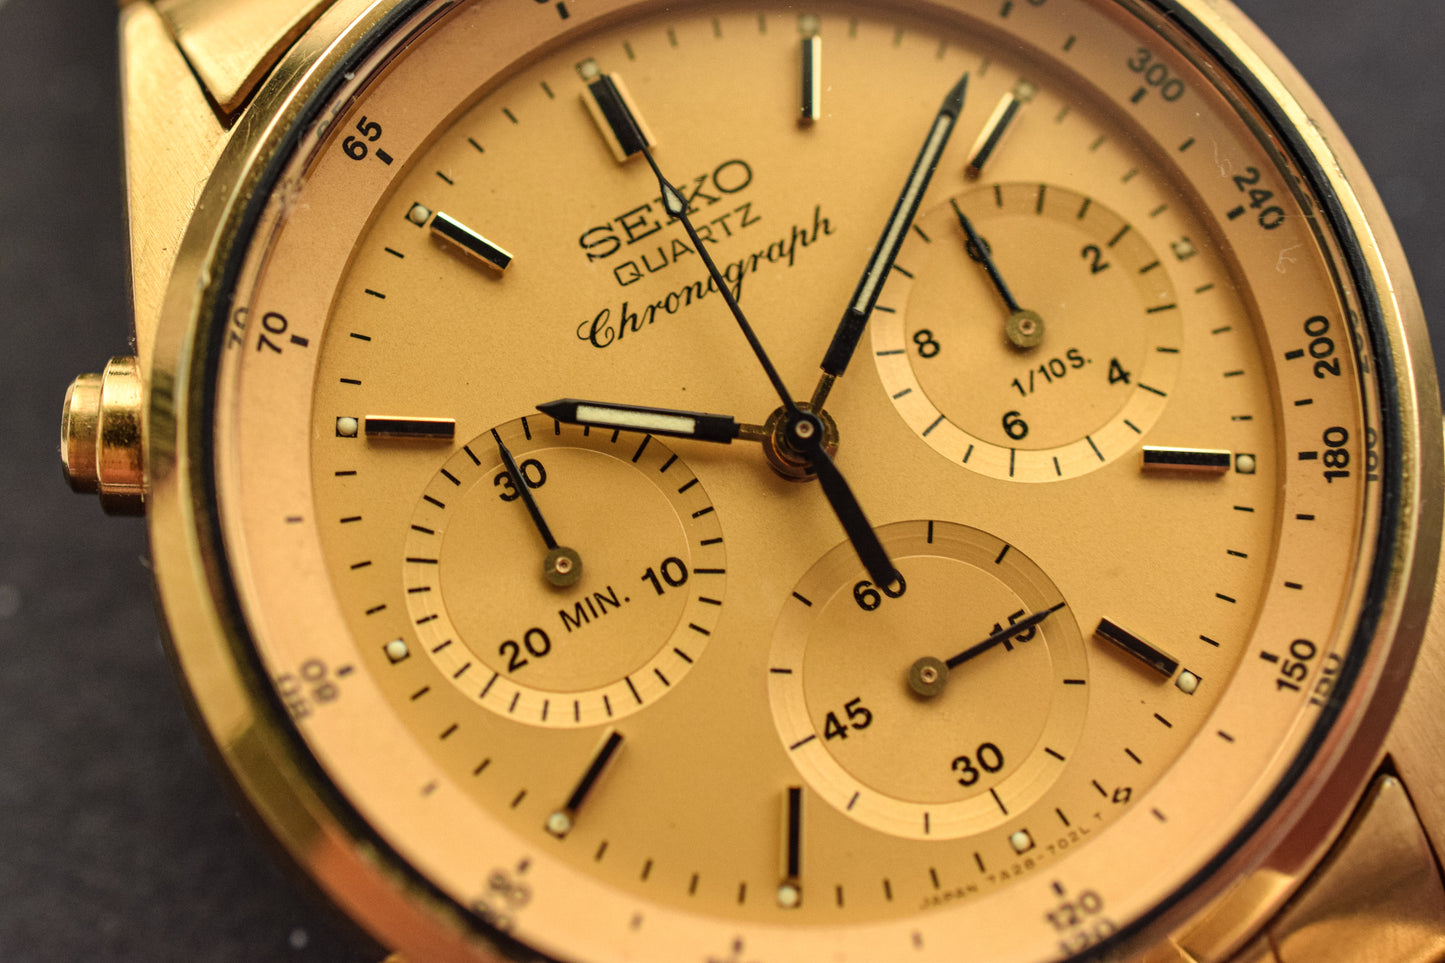 1985 Seiko Golden Chronograph "Speedy"